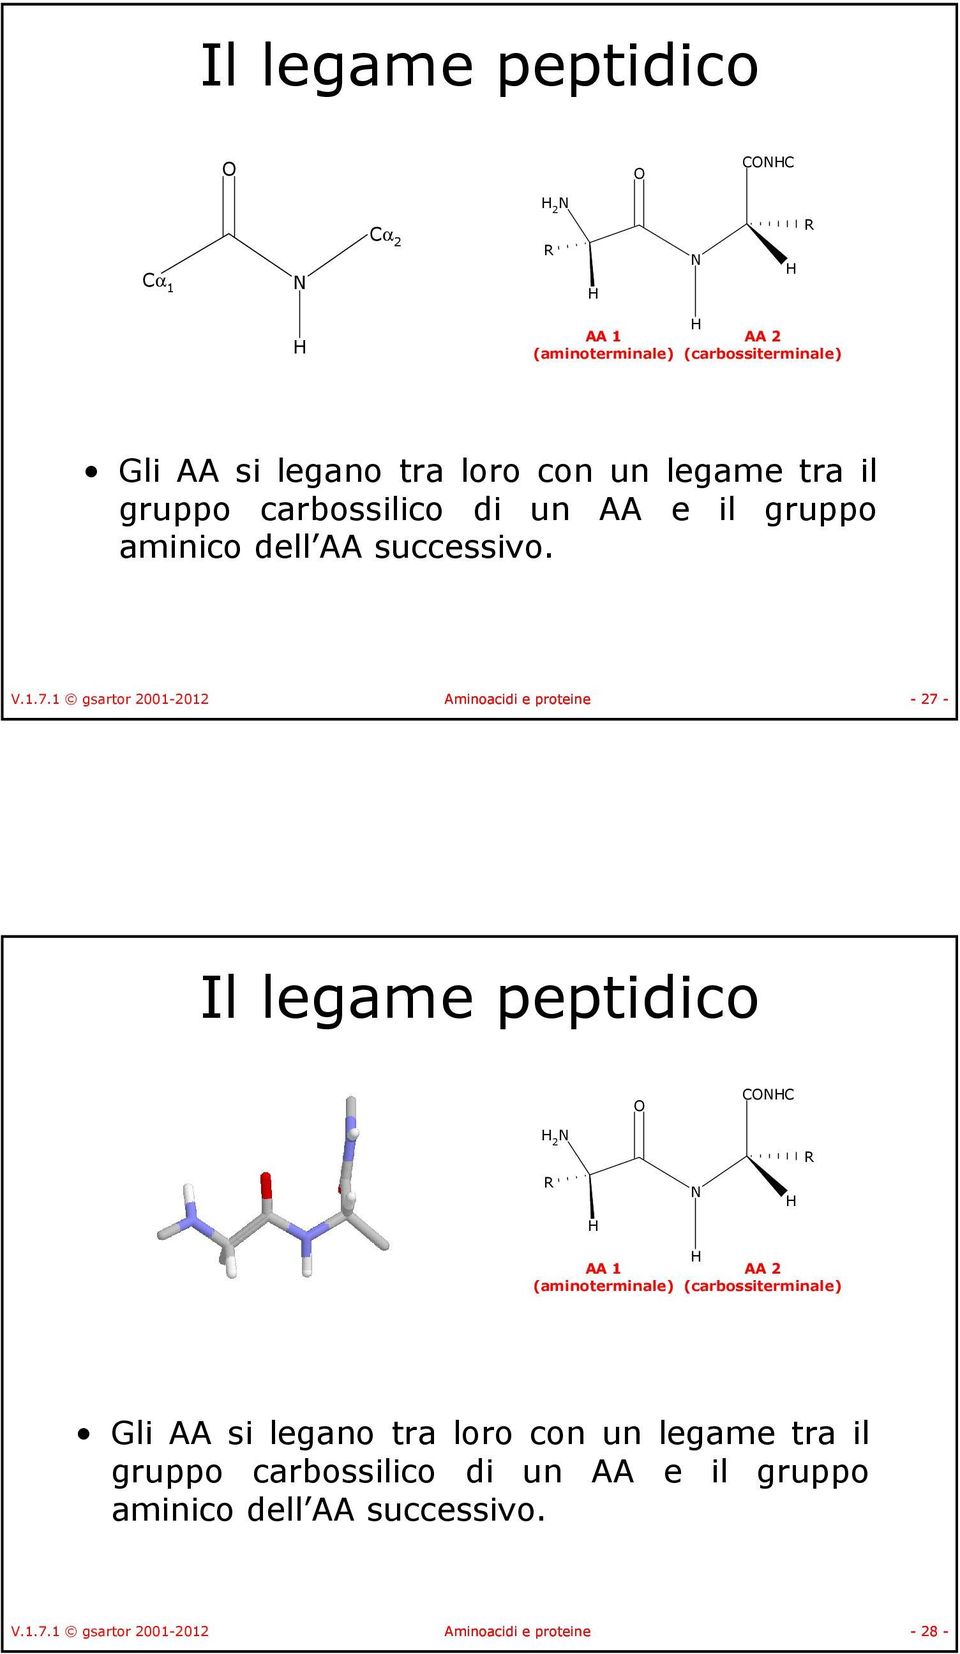 1 gsartor 2001-2012 Aminoacidi e proteine - 27 - Il legame peptidico CC 2 AA 1 AA 2 (aminoterminale) (carbossiterminale)